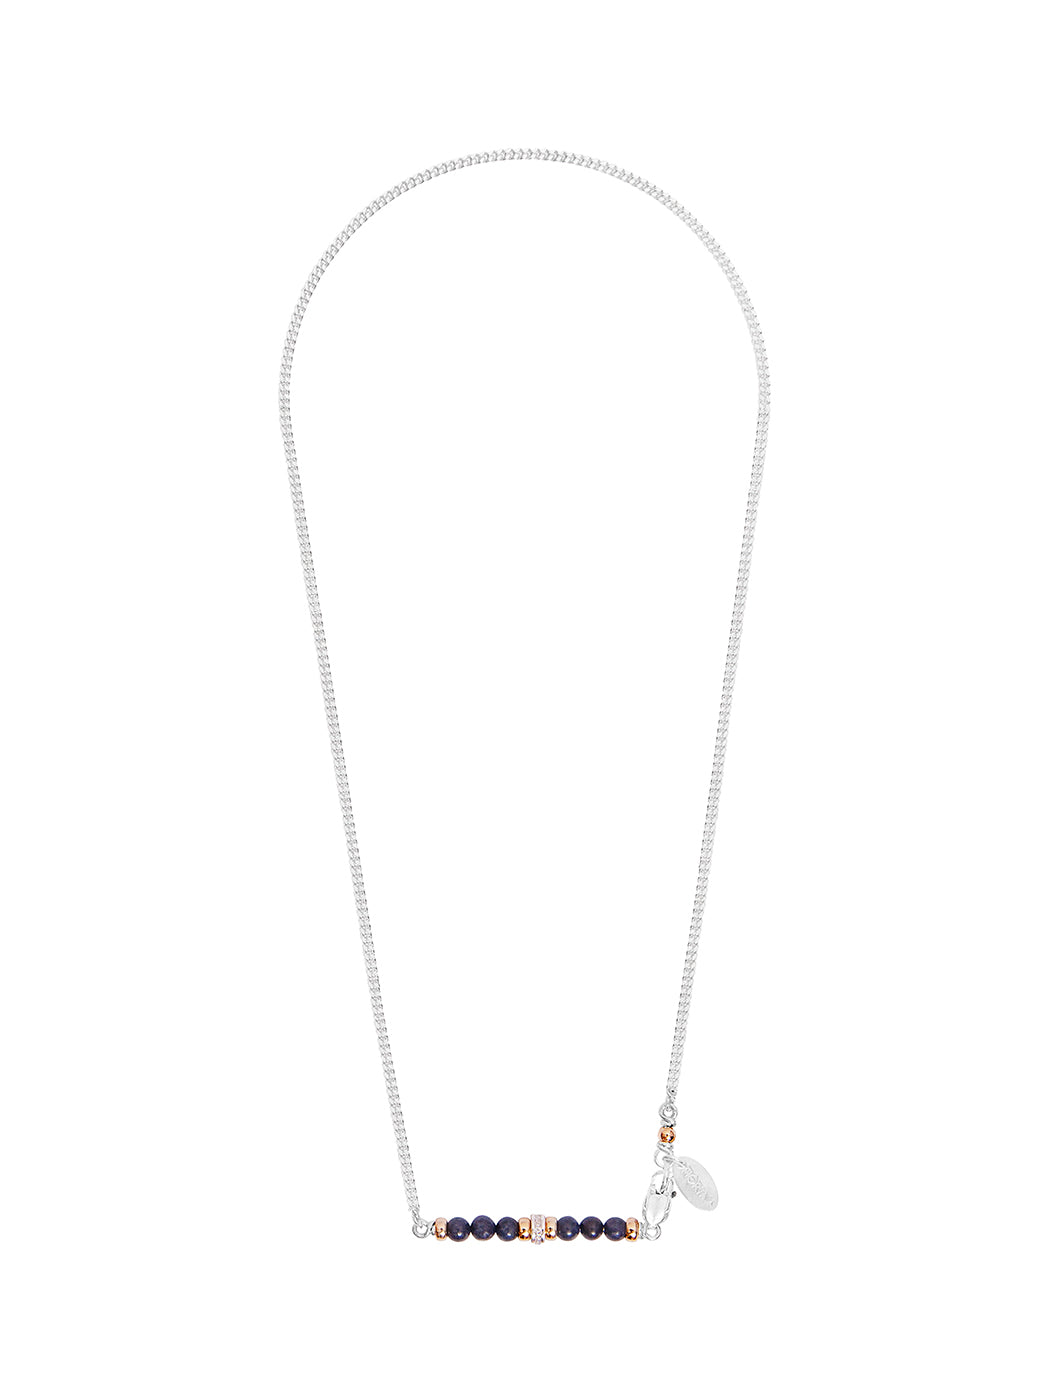 Fiorina Jewellery Silver Romance Necklace Sodalite